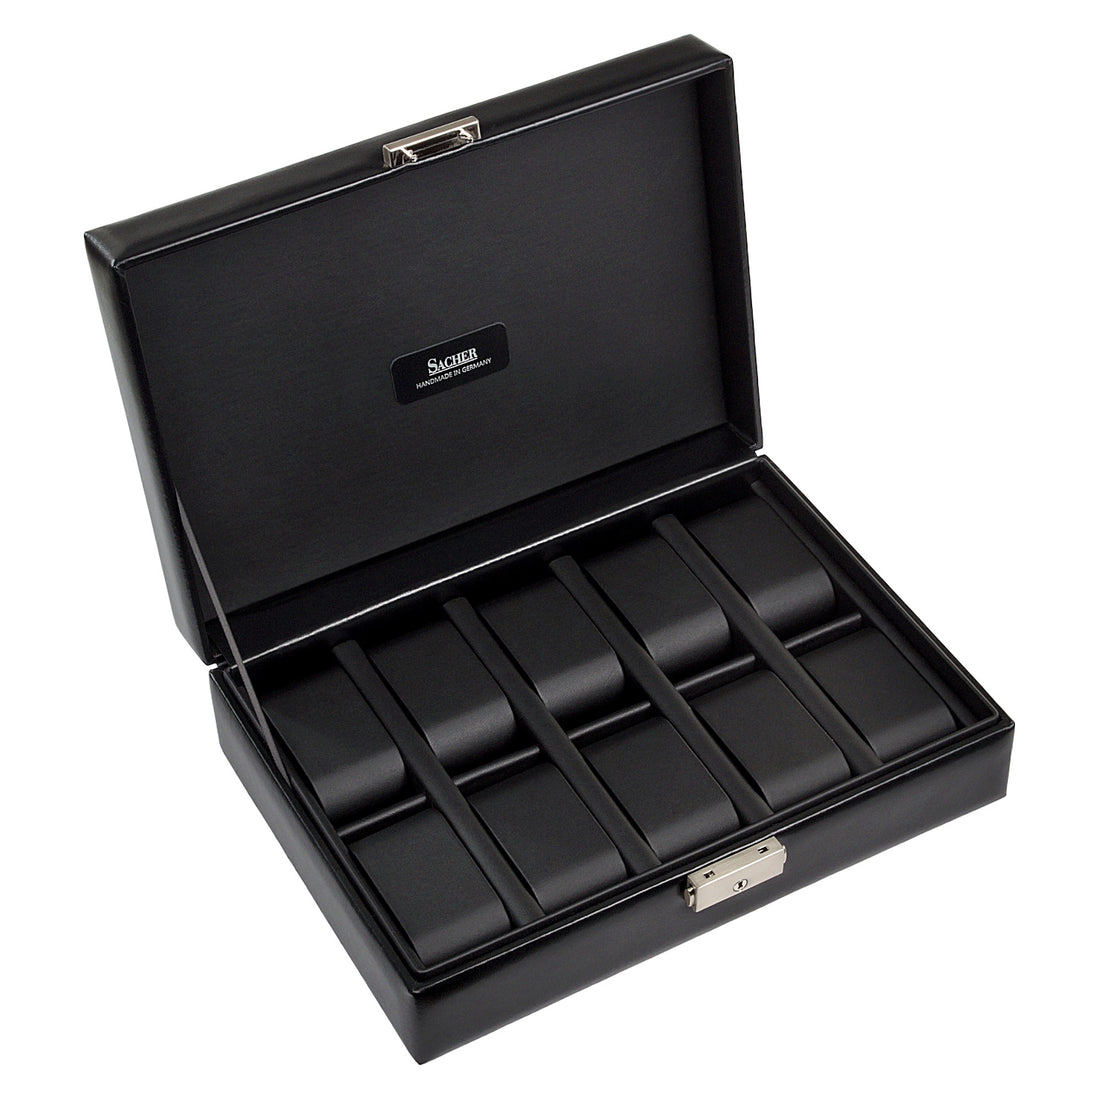 Scatole porta orologi - 10 orologi black exclusive / nero (pelle)